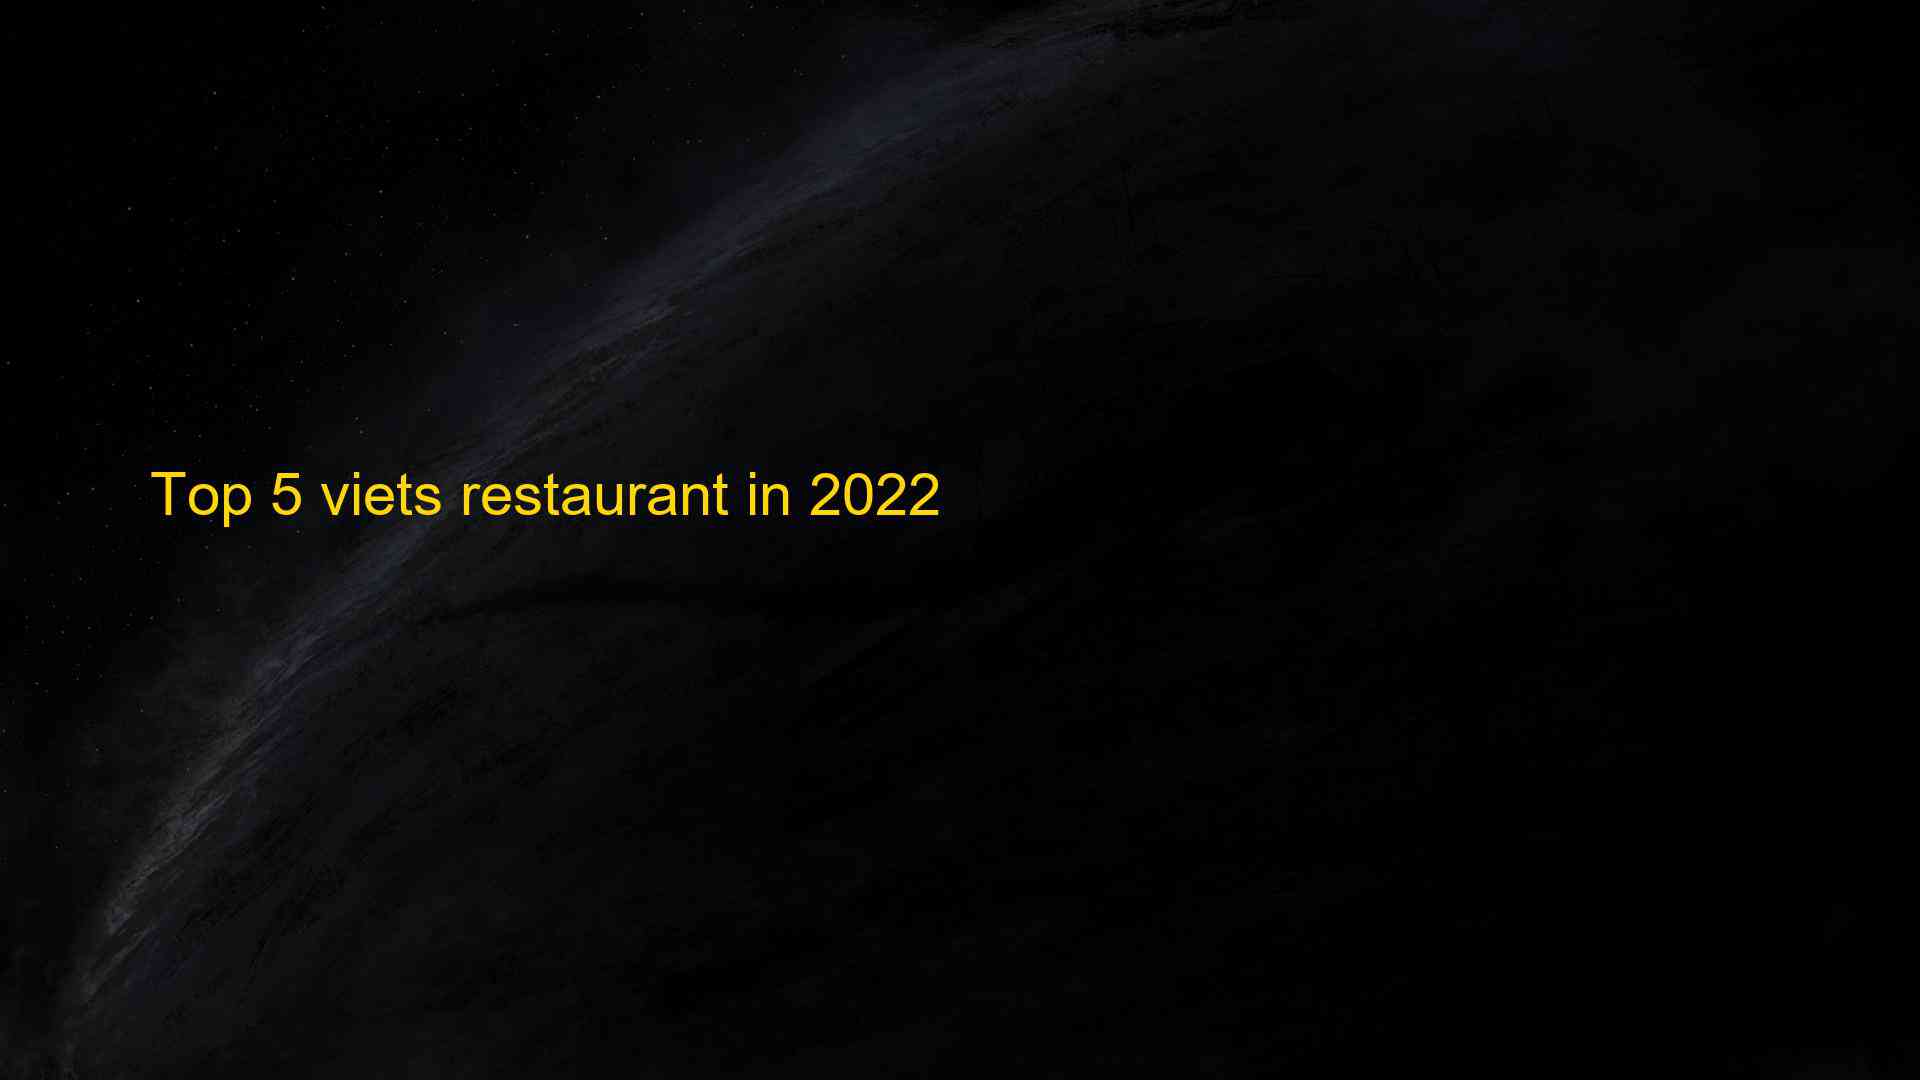 Top 5 viets restaurant in 2022 1663522330